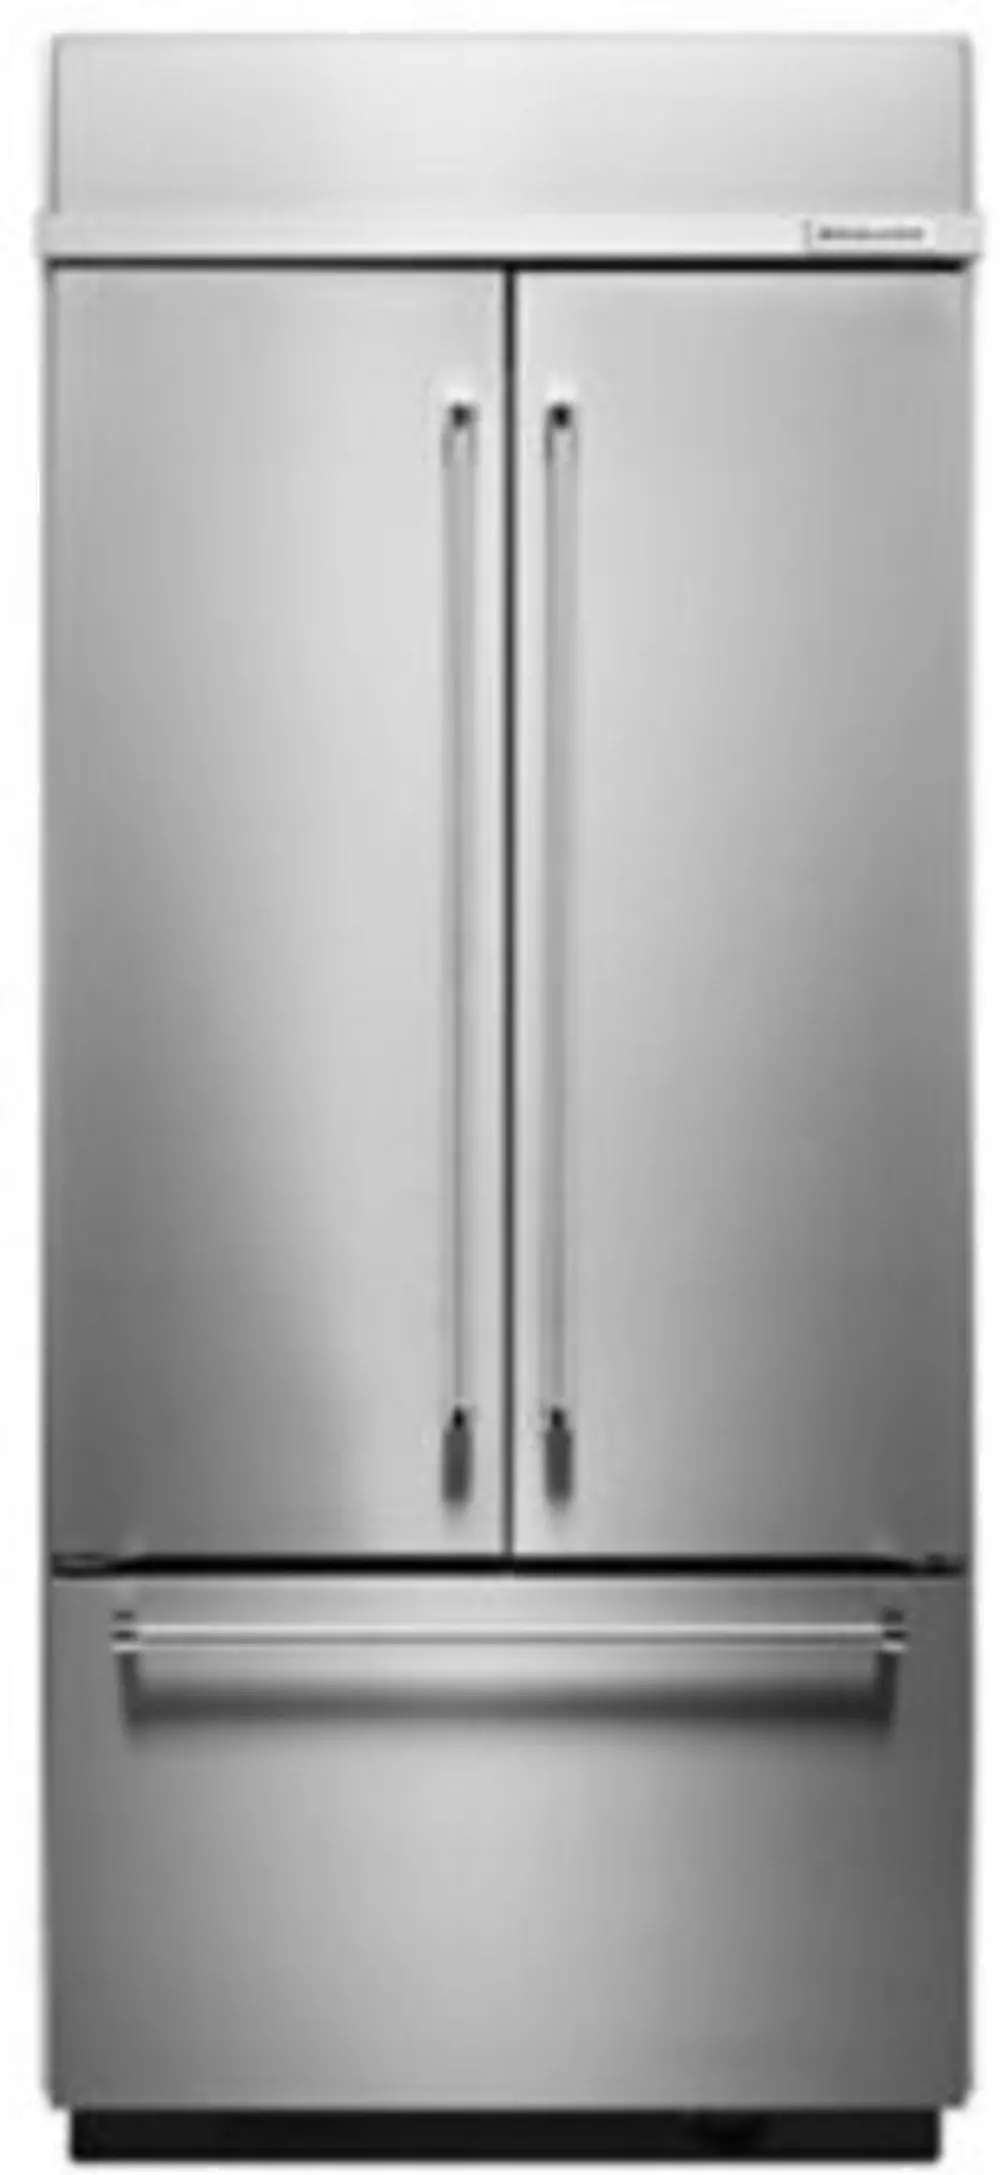 KBFN506ESS KitchenAid Stainless Steel French Door Refrigerator - 36 Inch-1